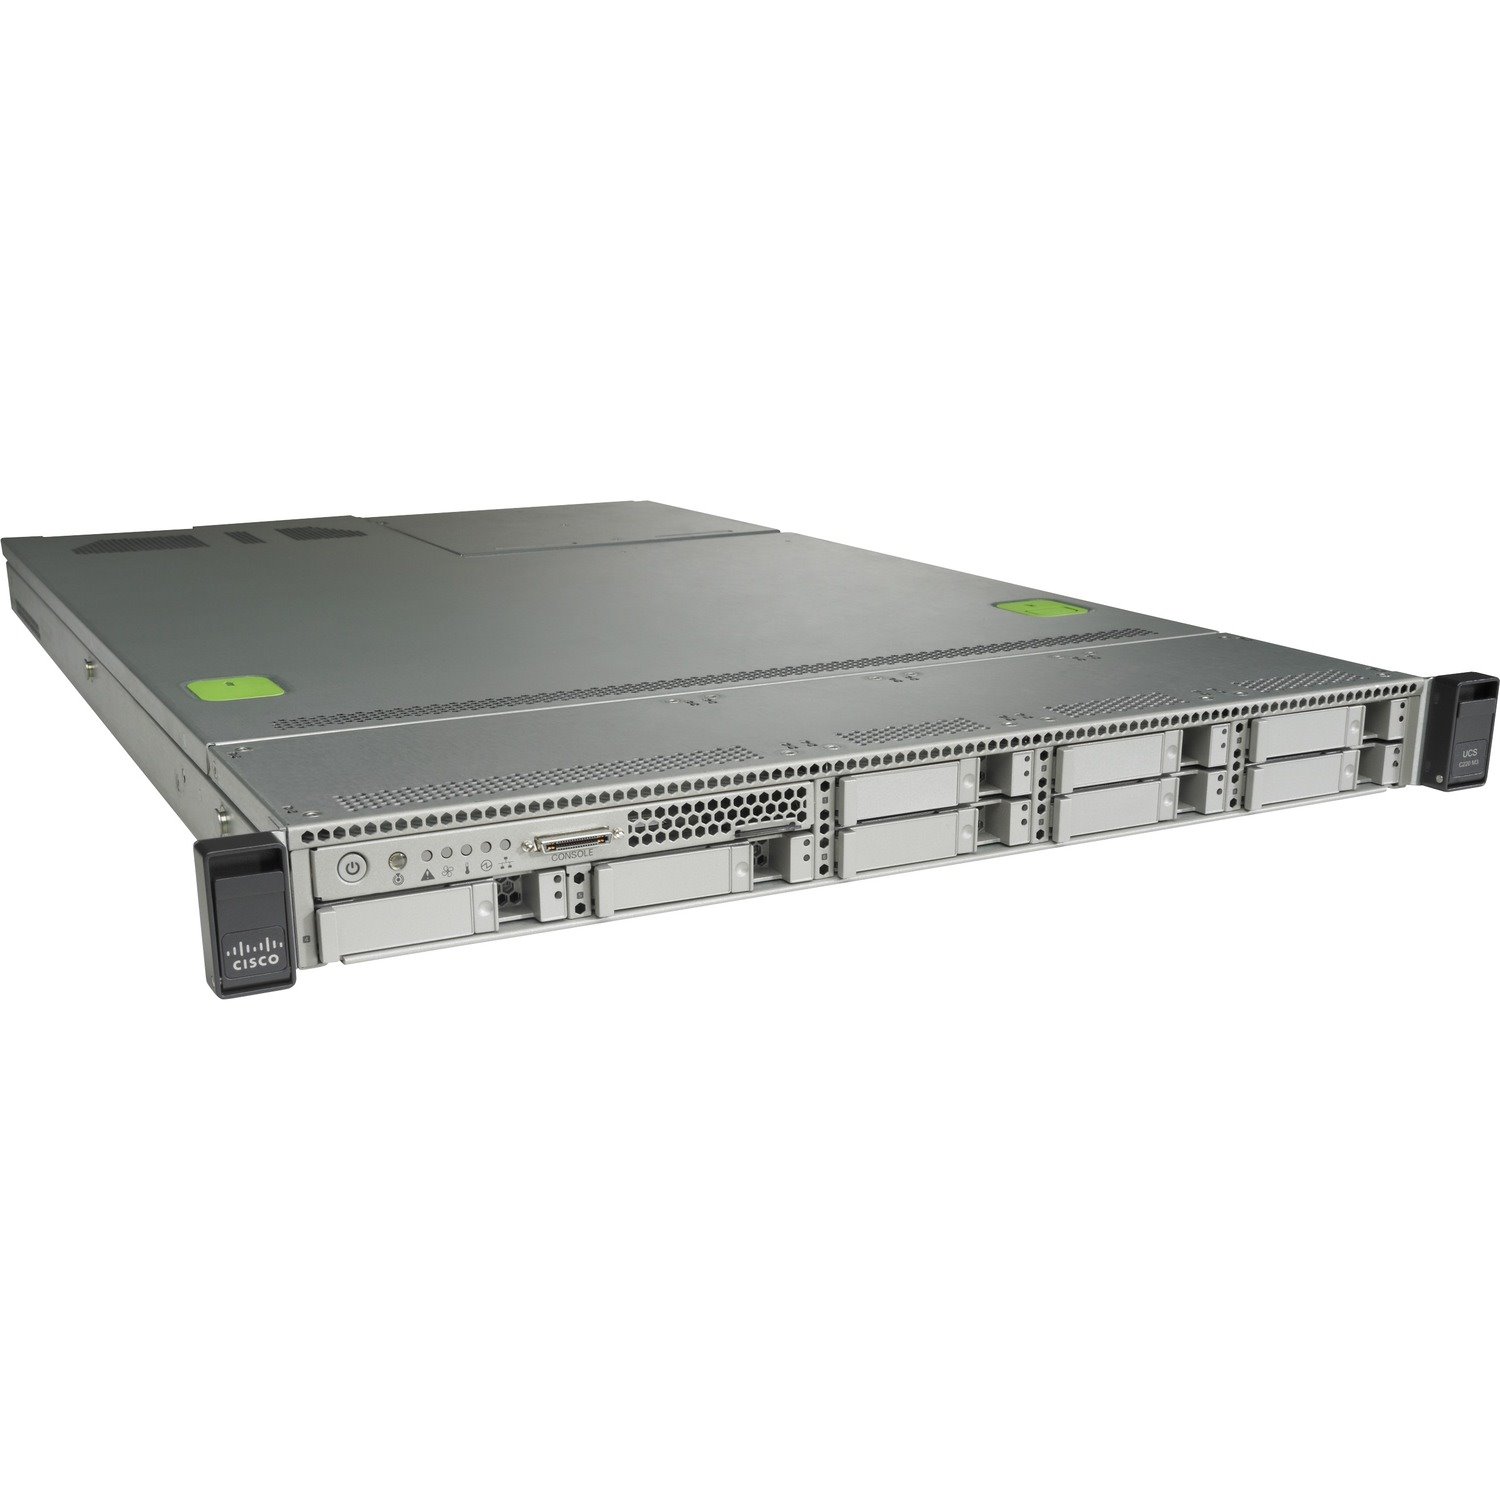 Cisco C220 M3 1U Rack Server - Intel Xeon X5650 2.66 GHz - 16 GB RAM - 1.50 TB HDD